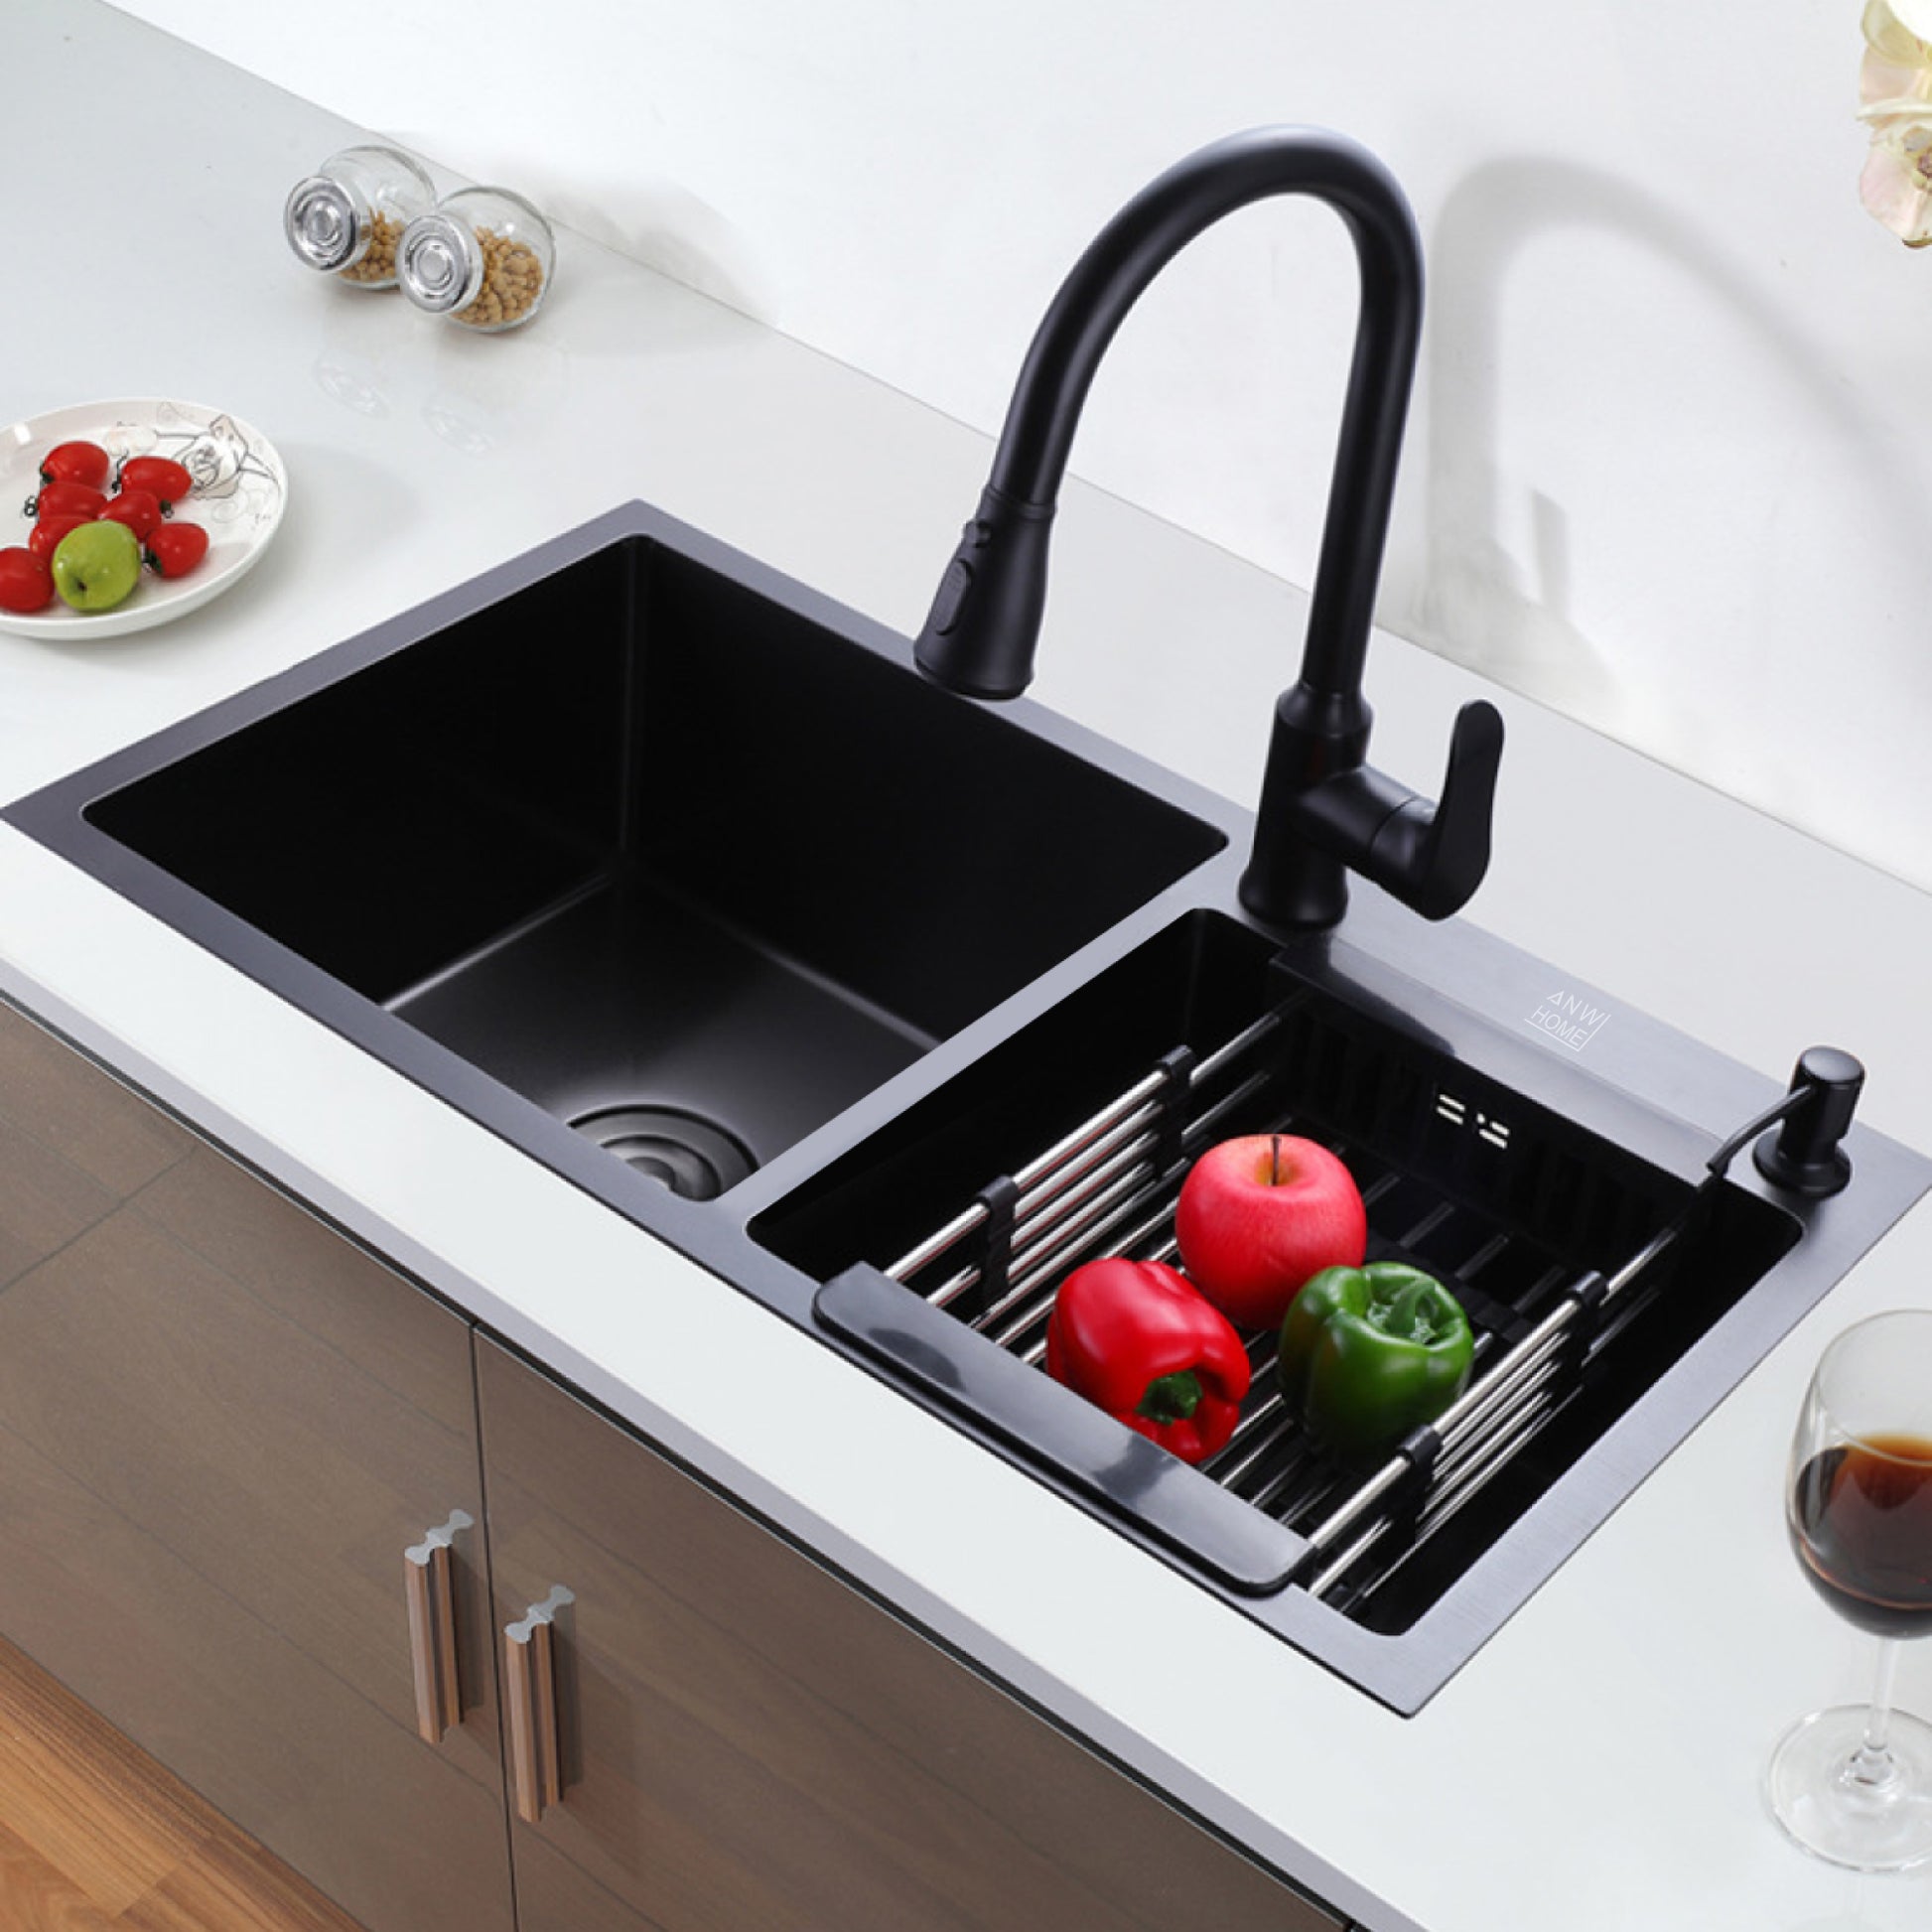  Fregadero de cocina de doble tazón, color negro y gris,  escurridor de fregadero cepillado de acero inoxidable y kit de instalación  adecuado para cocina, comedor (color : C, tamaño: 30.7 x